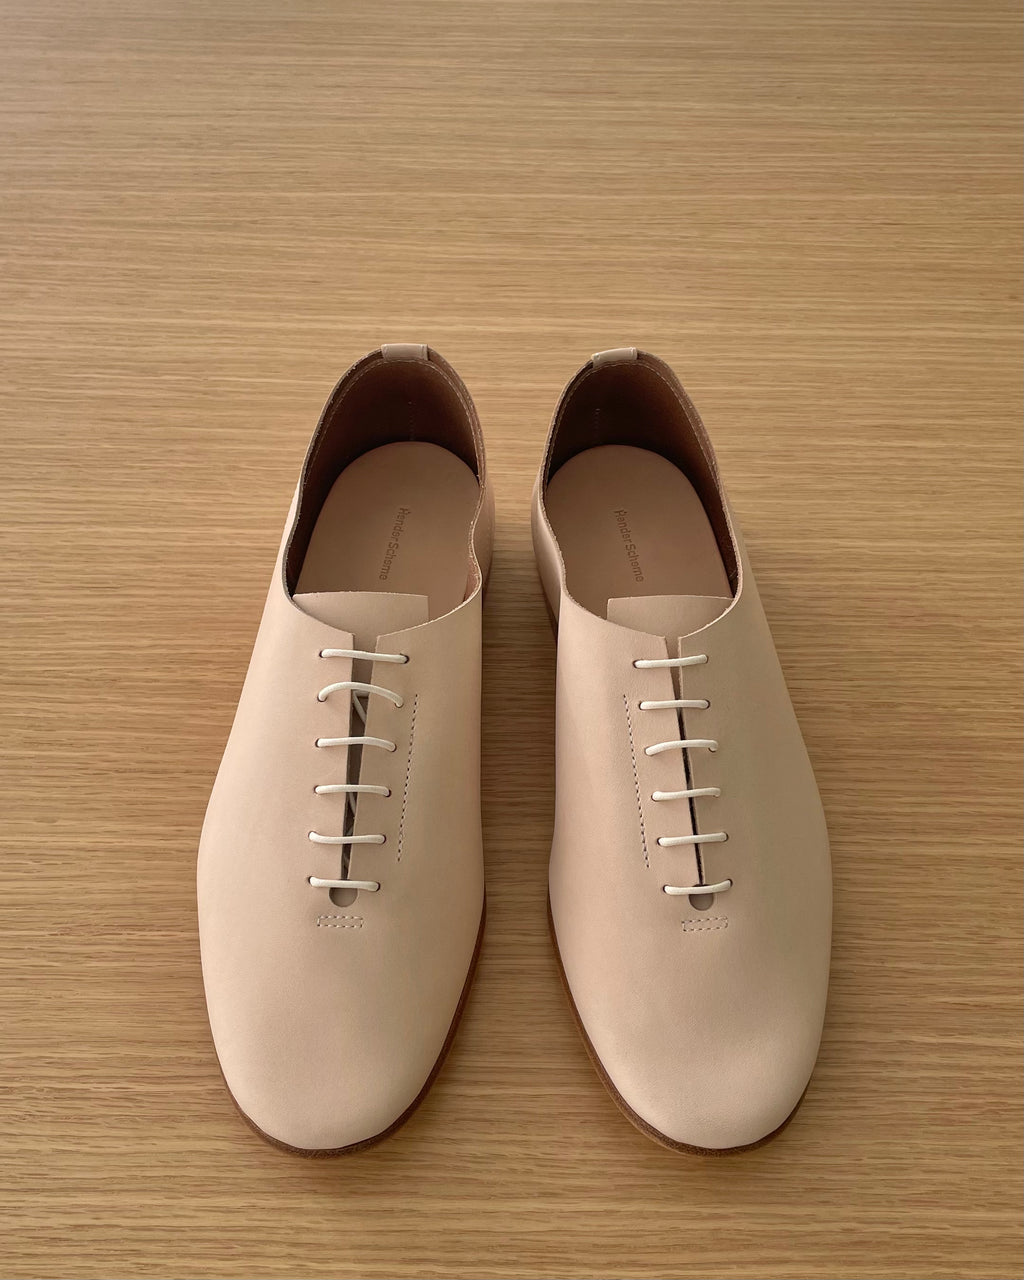 HENDER SCHEME Gender Neutral Leather Goods Hand-Made in Tokyo 